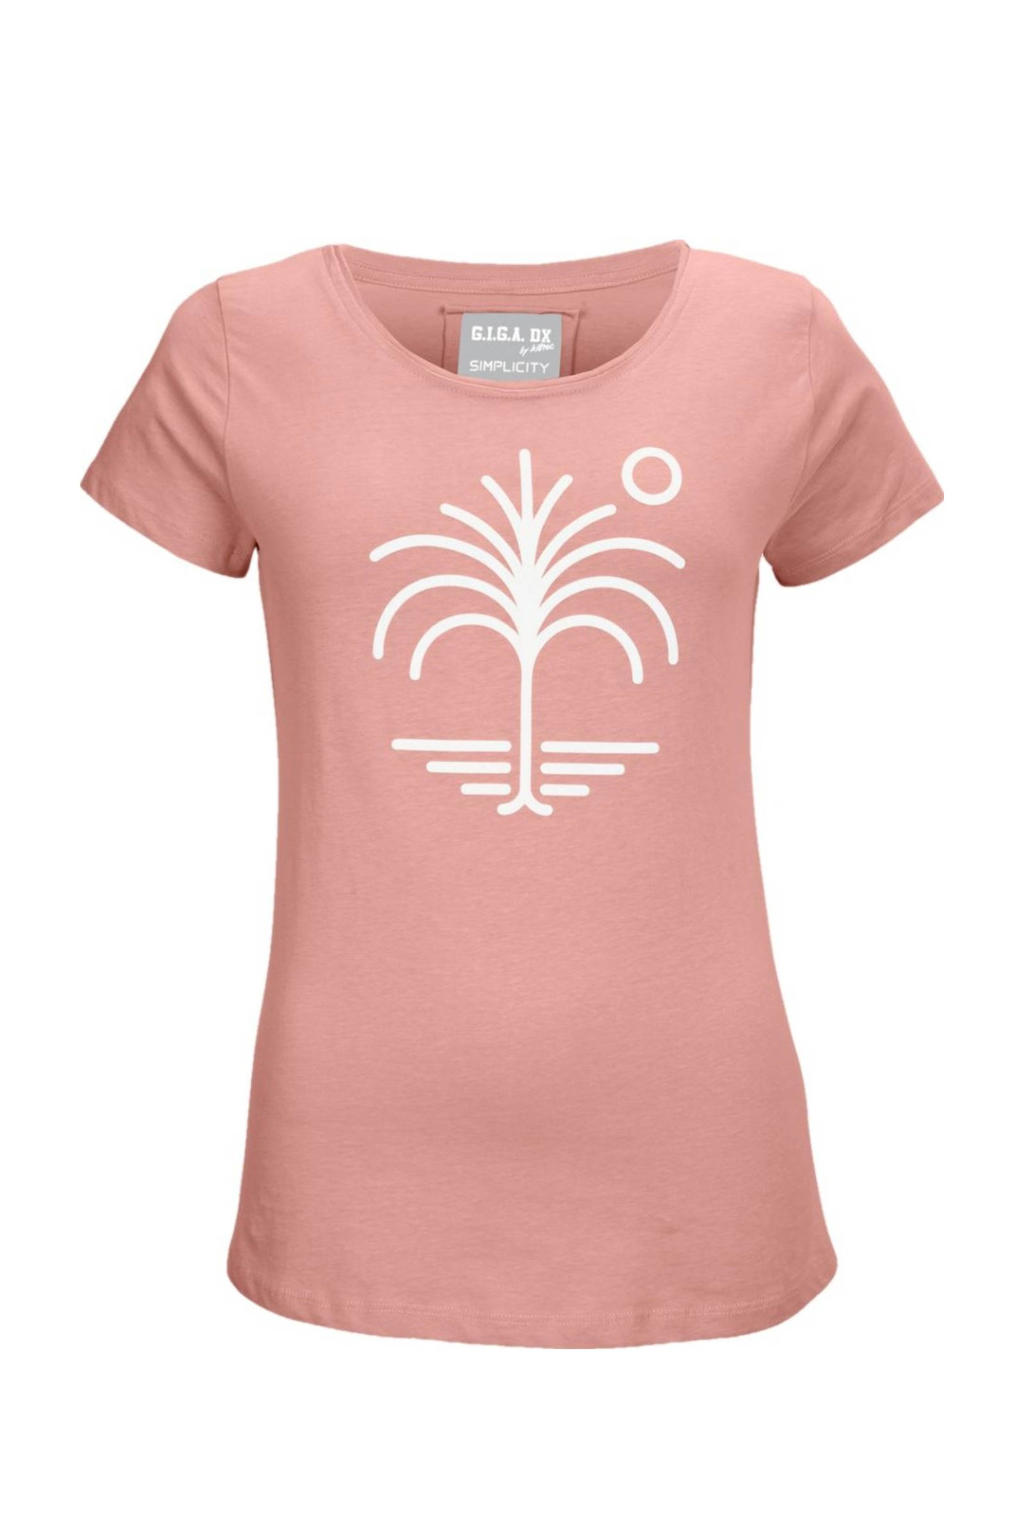 Lichtroze dames G.I.G.A. DX outdoor T-shirt van katoen met printopdruk, korte mouwen en ronde hals